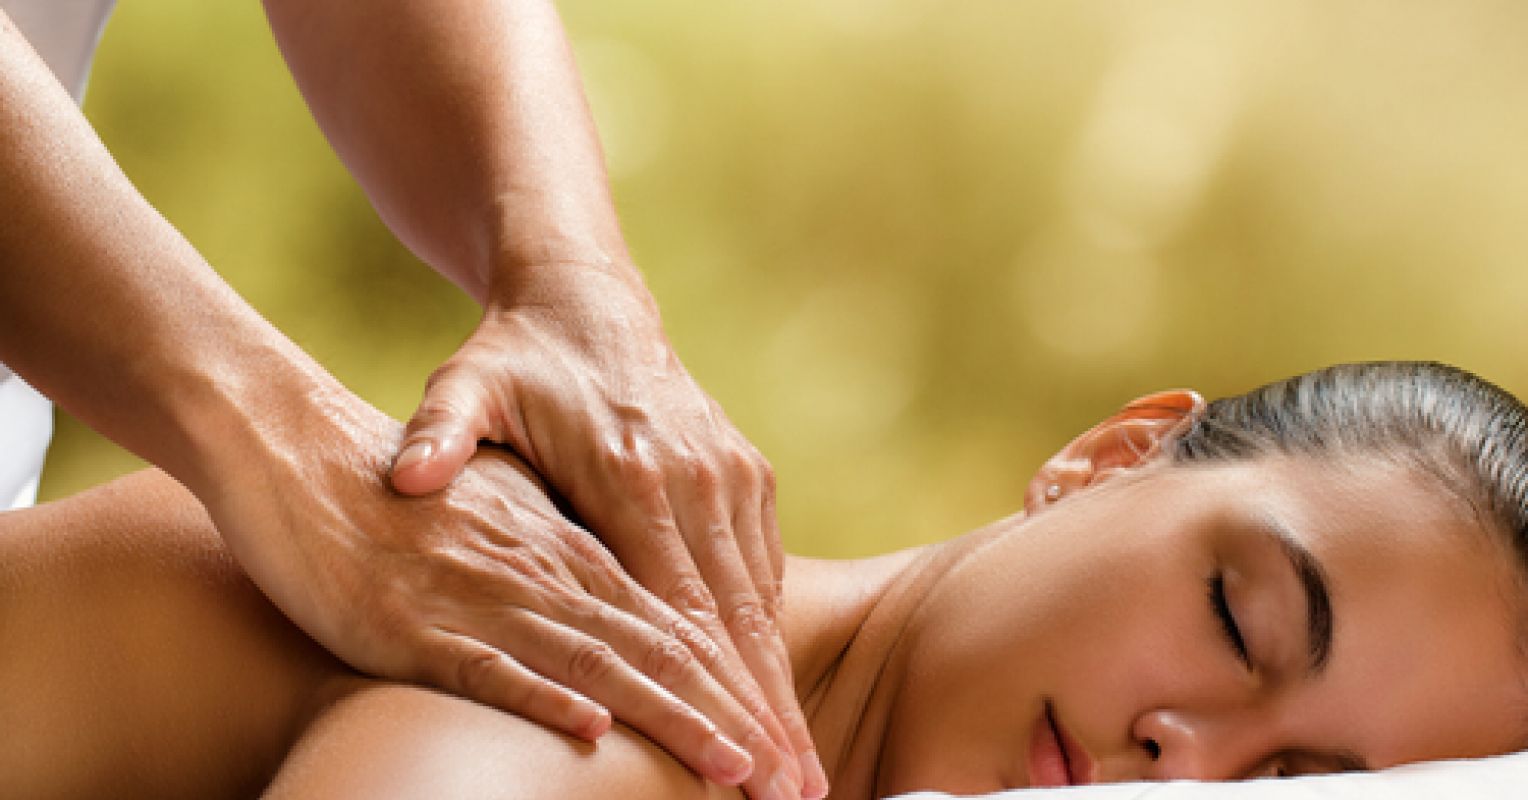 Spa Massage Benefits